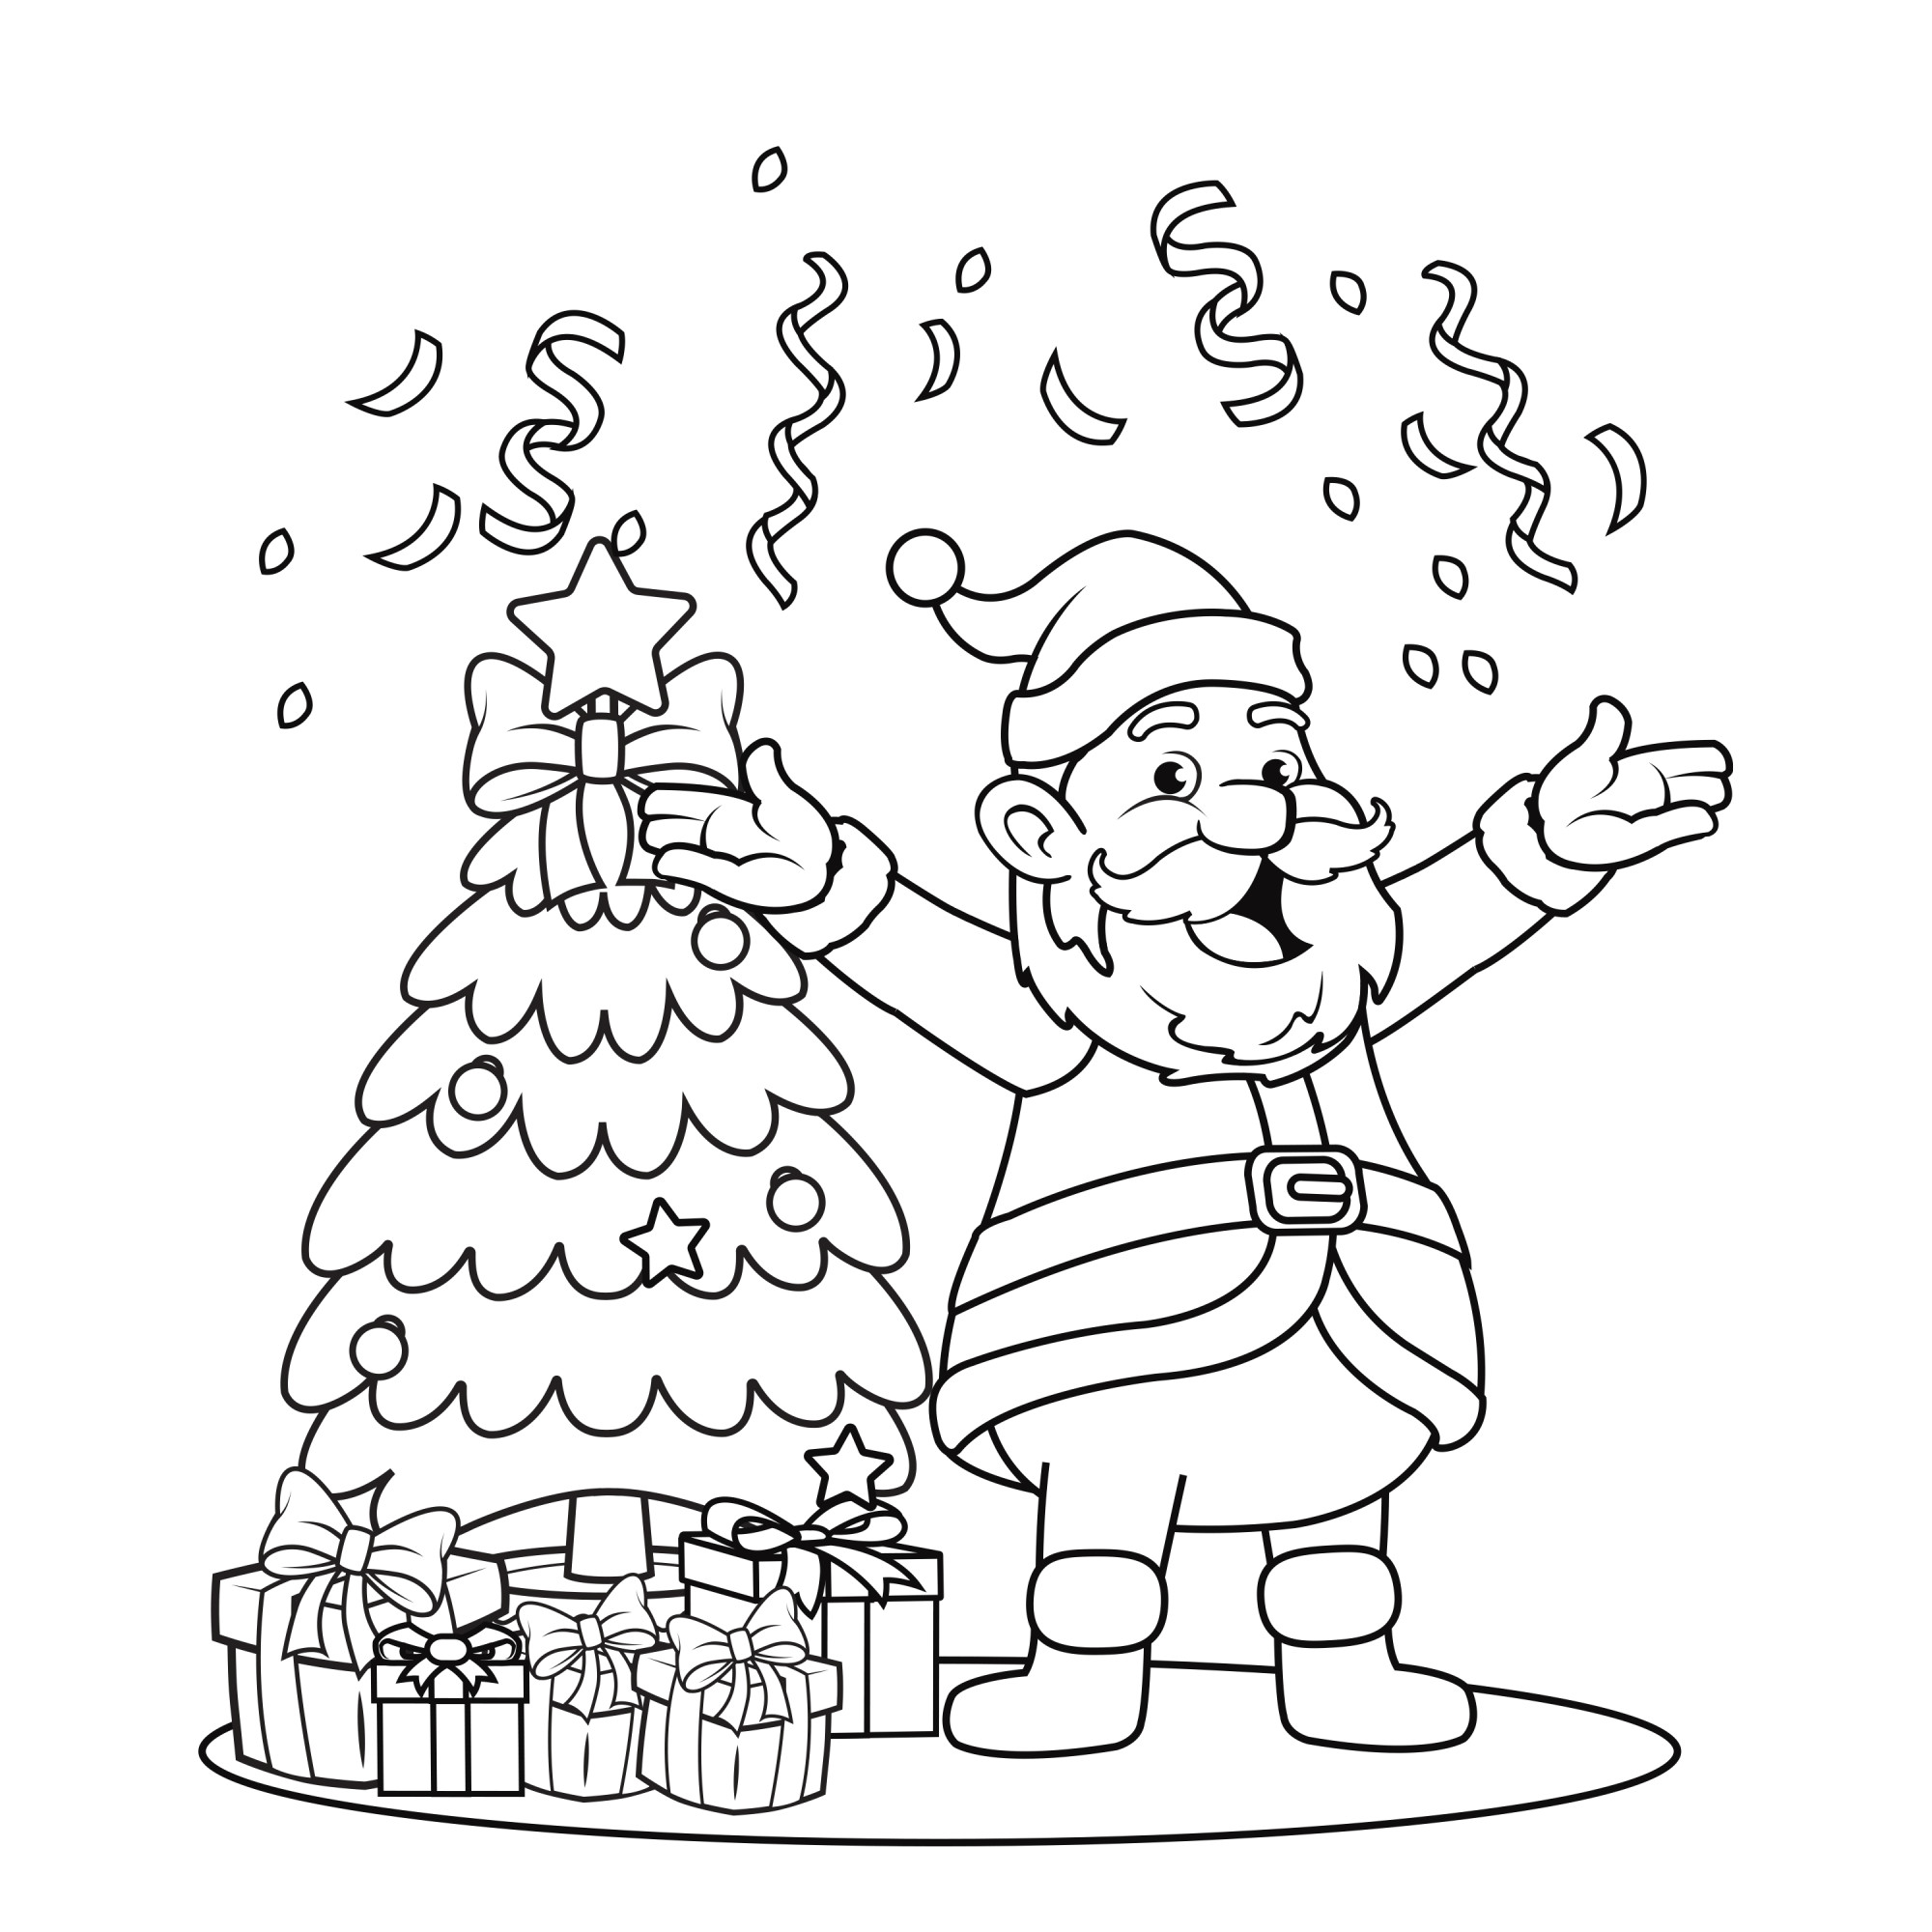 Раскраска для детей: дед мороз стоит у ёлки с подарками